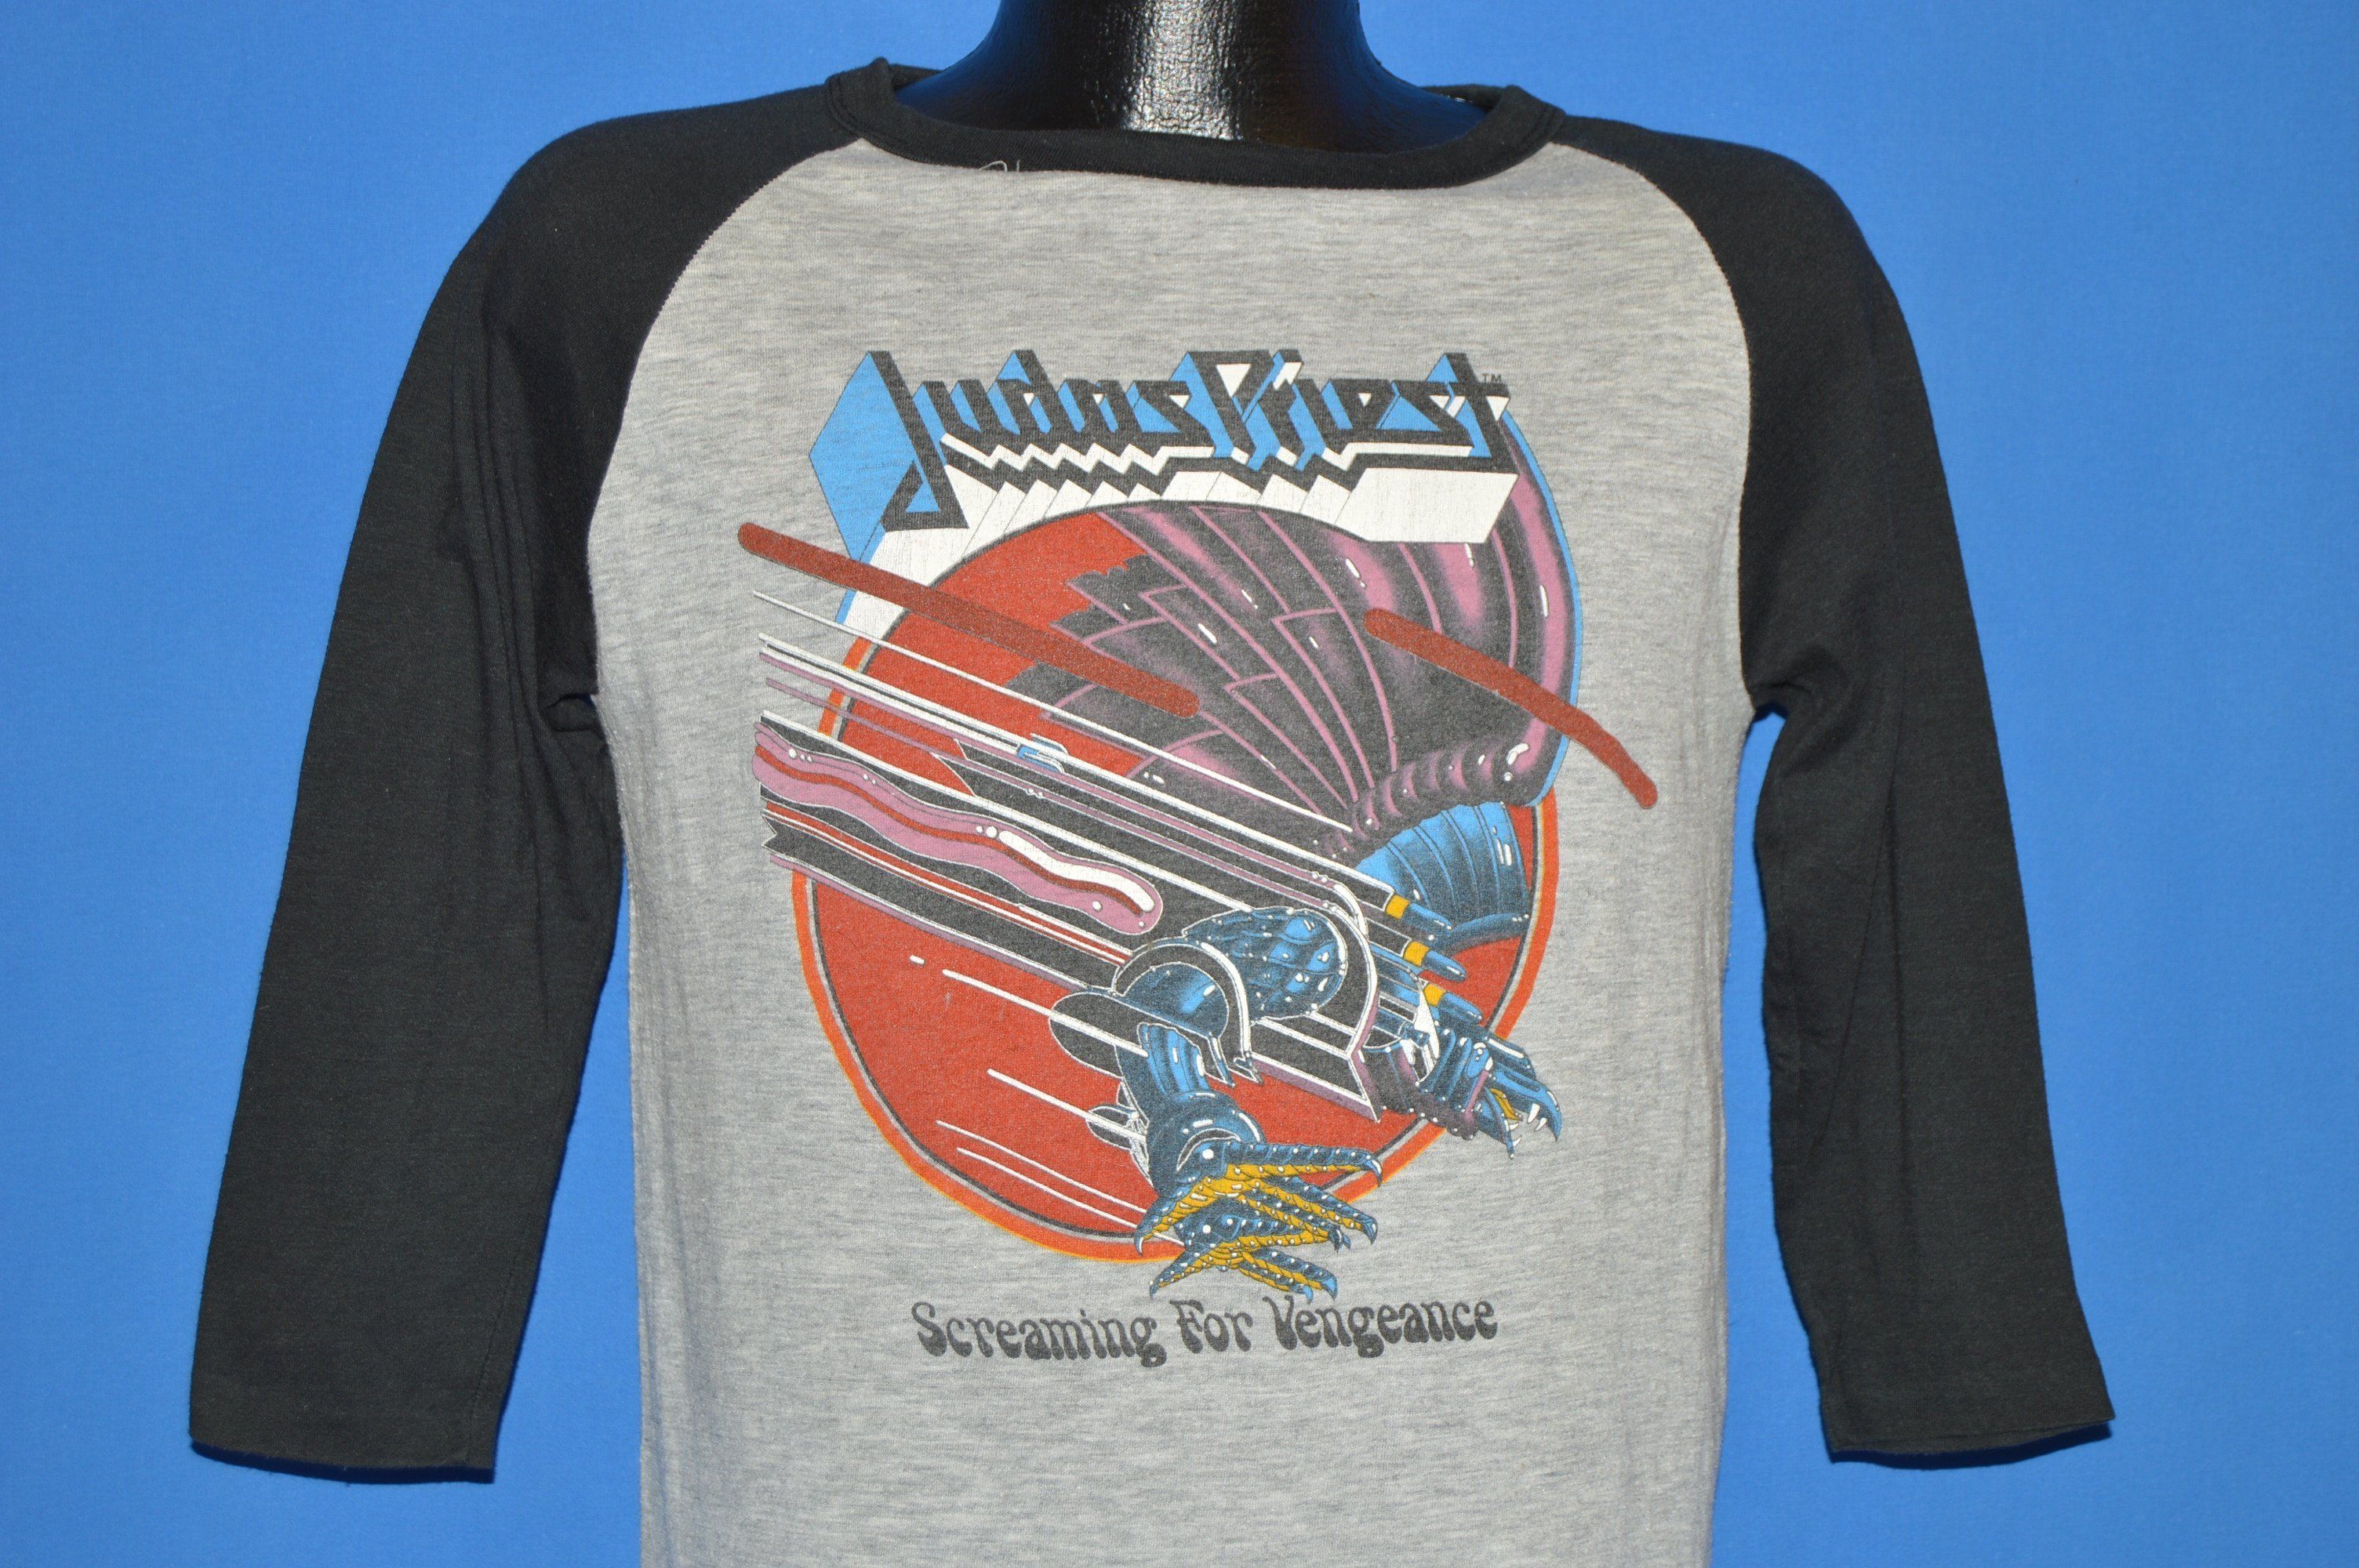 judas priest 1980 tour shirt